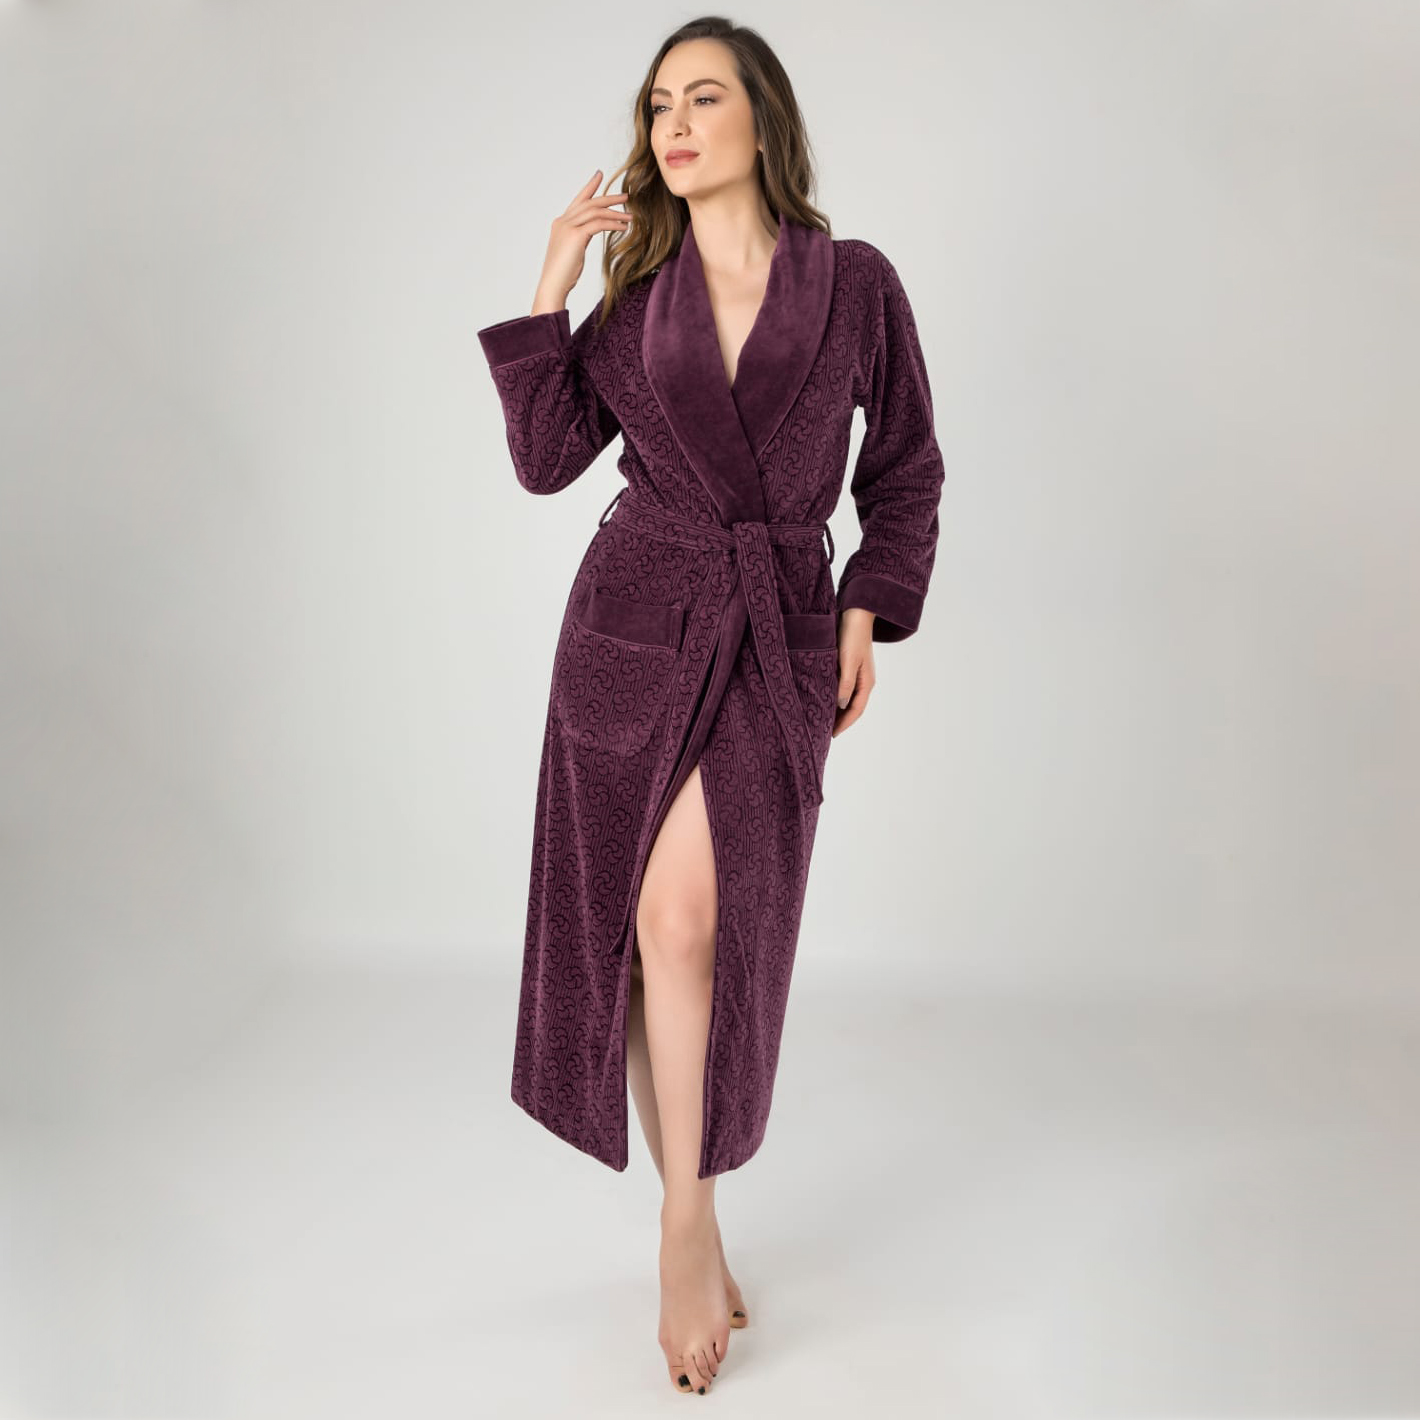 Банный халат Кайли цвет: темно-фиолетовый (L-XL)